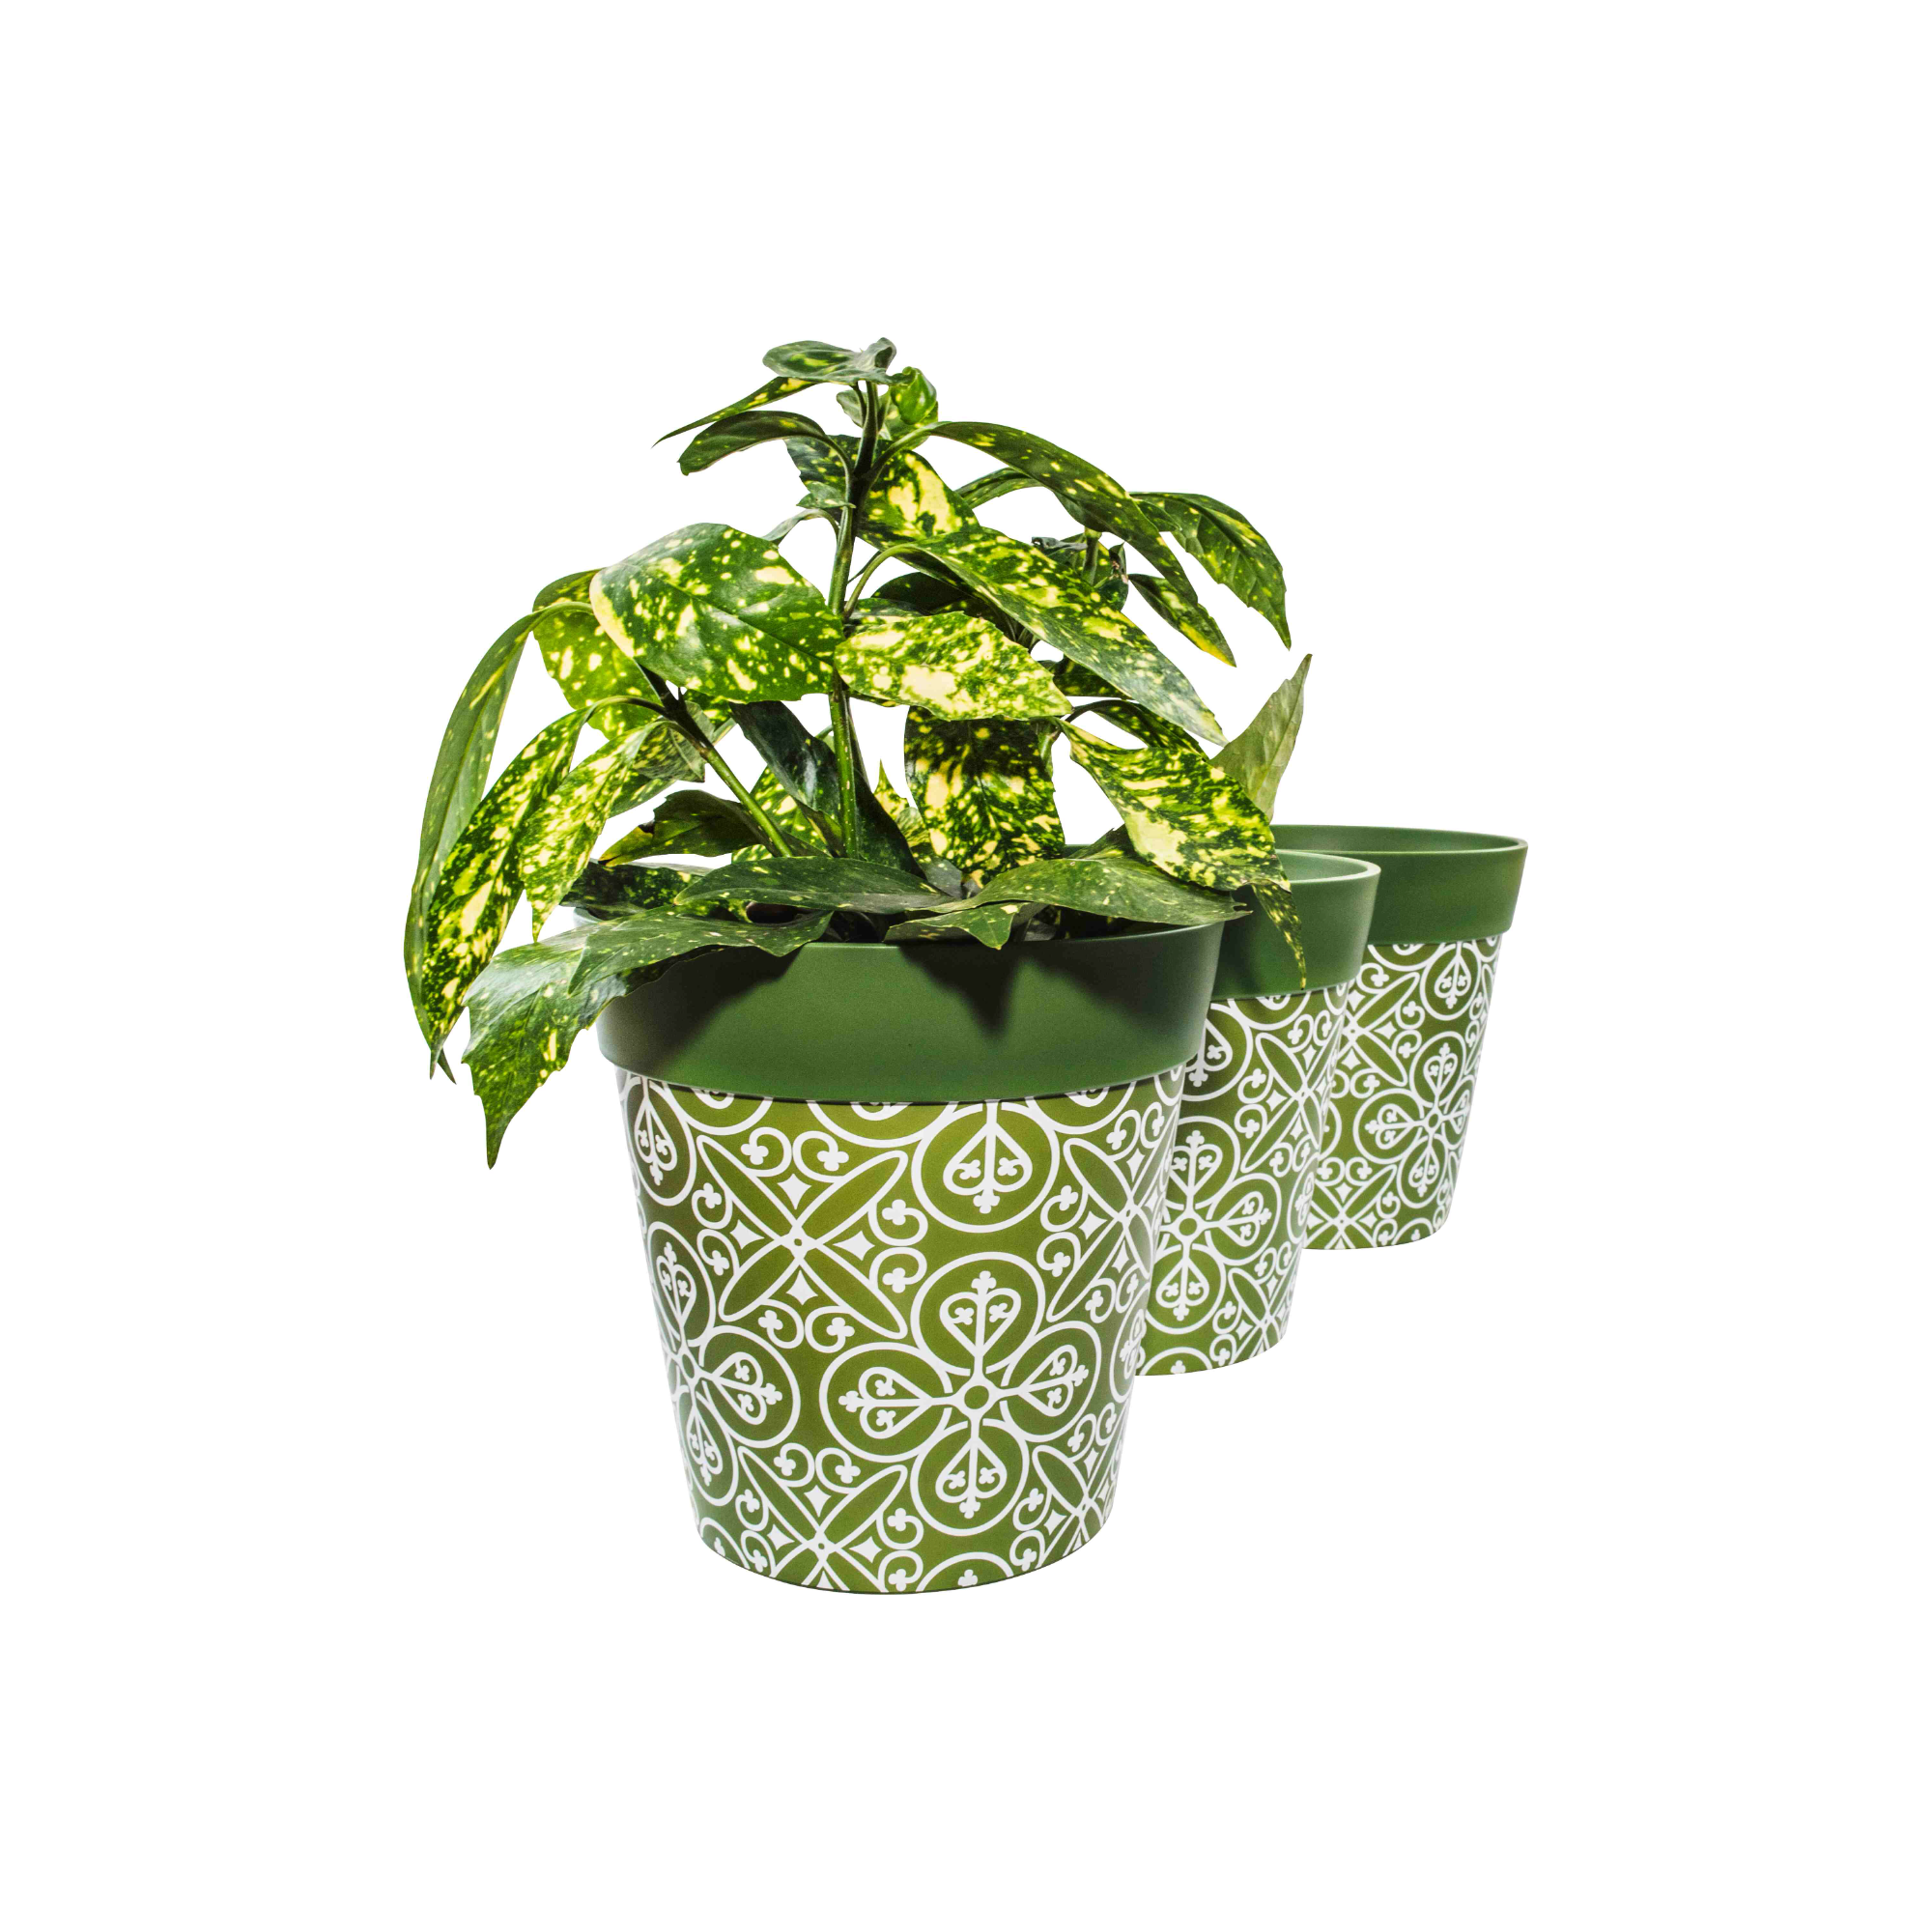 Picture of 3 Planted Medium 22cm Green Moroccan Style Plastic Indoor/Outdoor Flowerpots